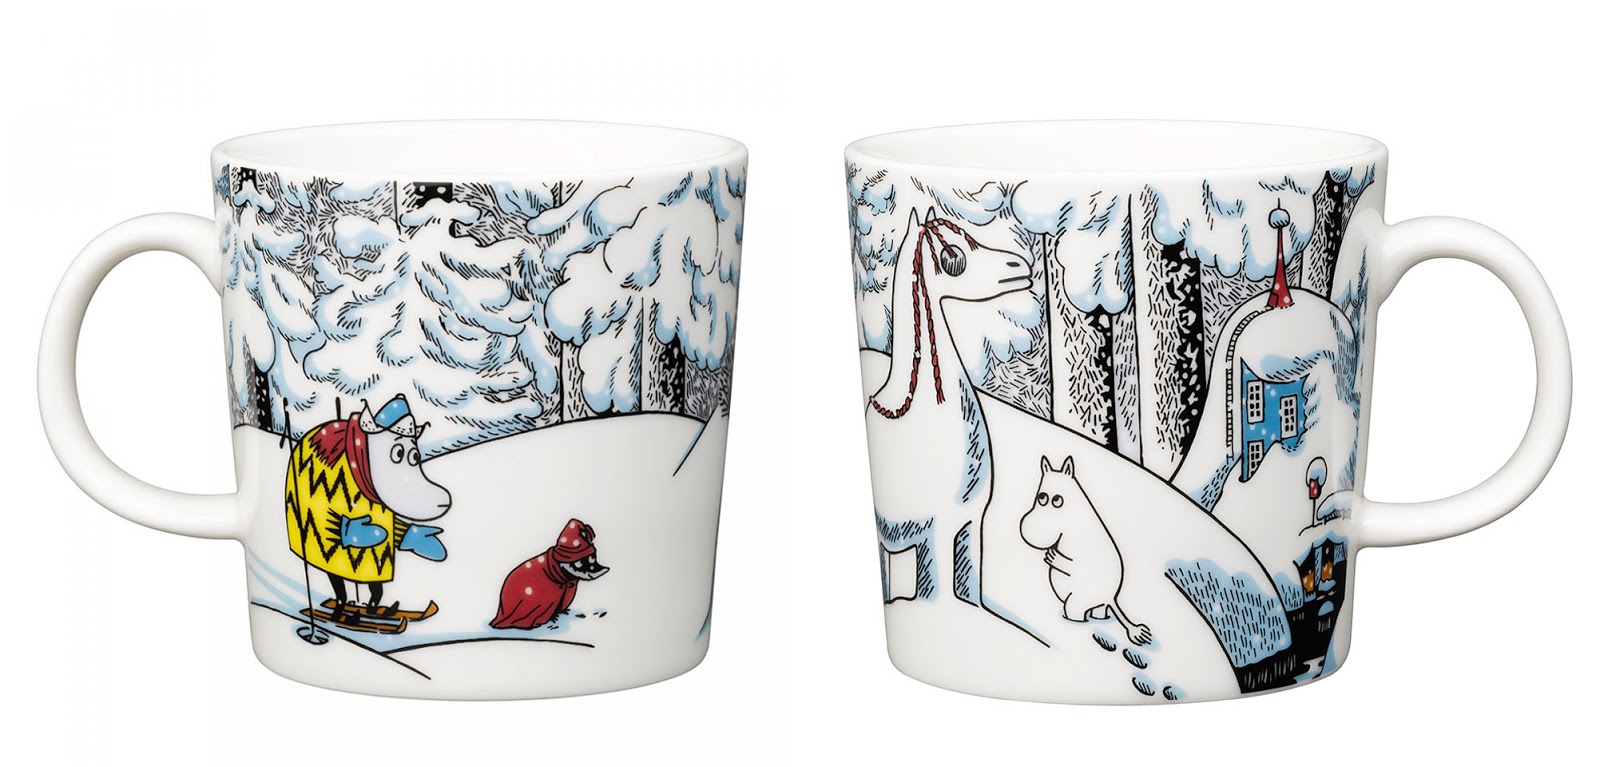 Moomin mugs 2016